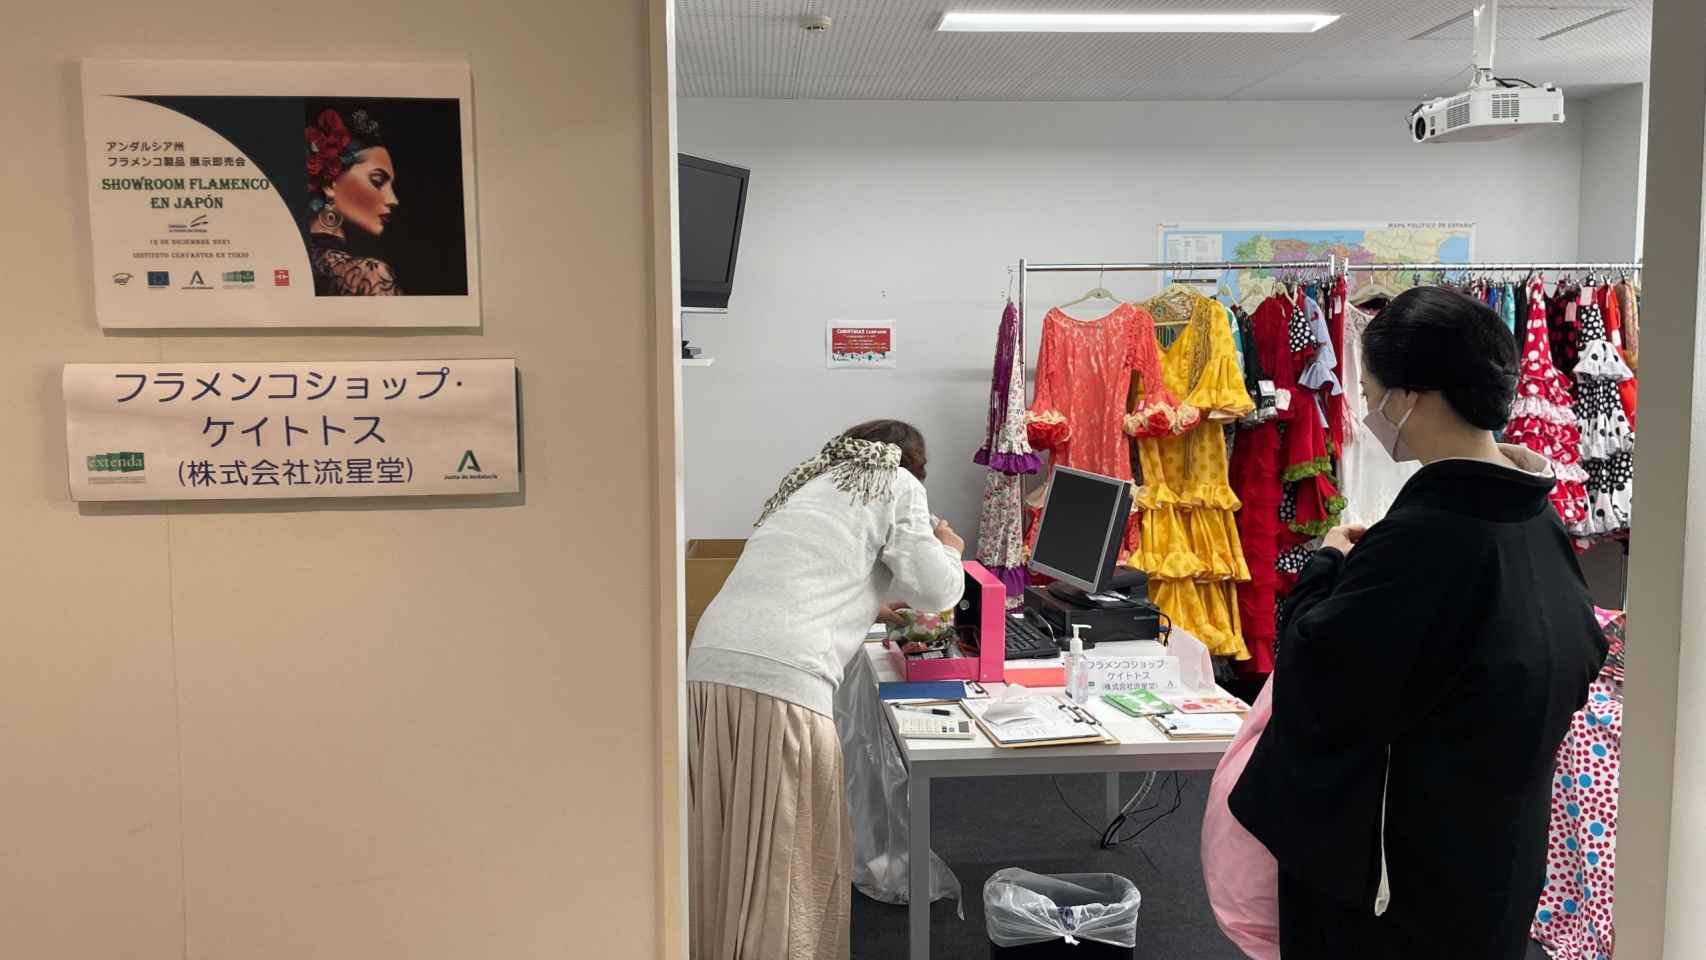 'Showroom' en Japón de firmas de moda andaluzas.